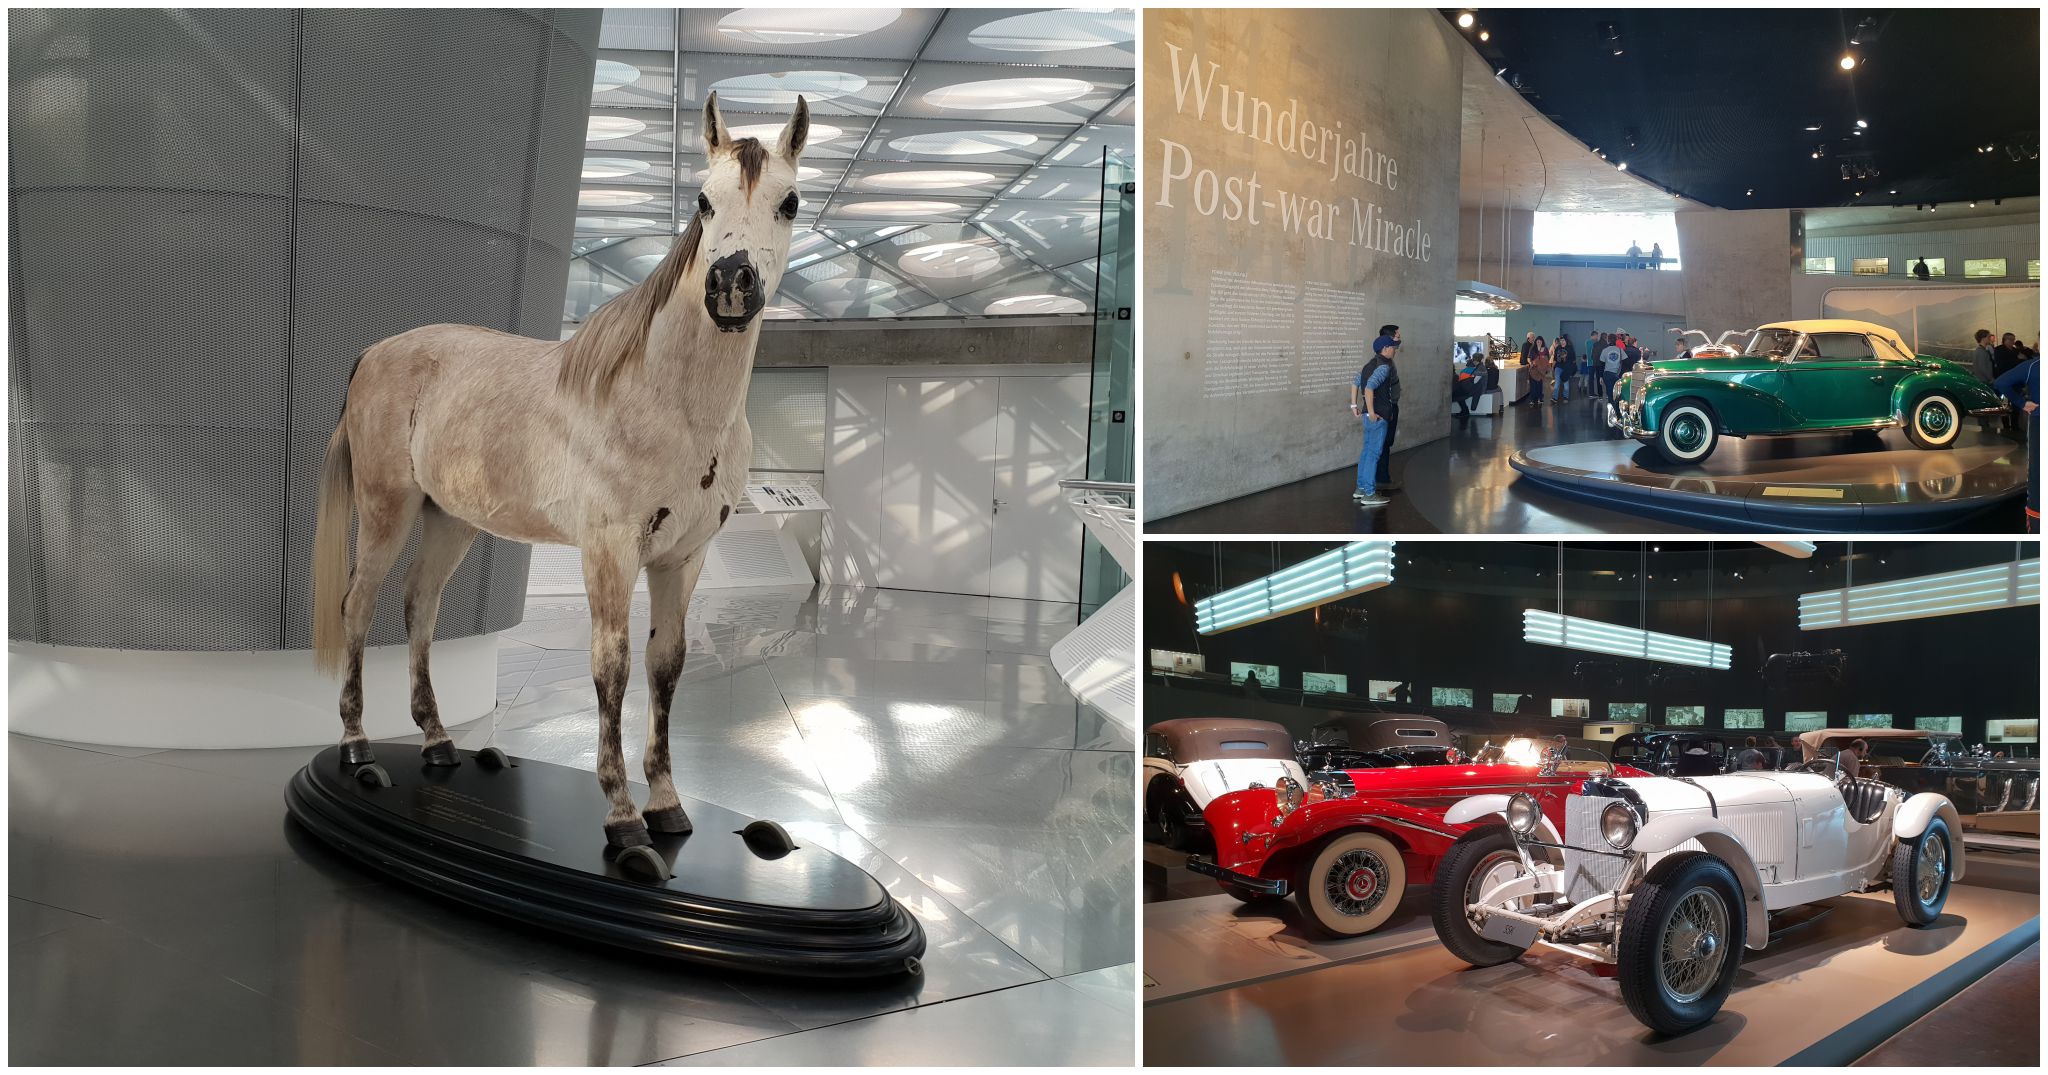 Tham quan bảo tàng xe Mercedes-Benz Museum ở Đức, chụp bằng Galaxy S9+